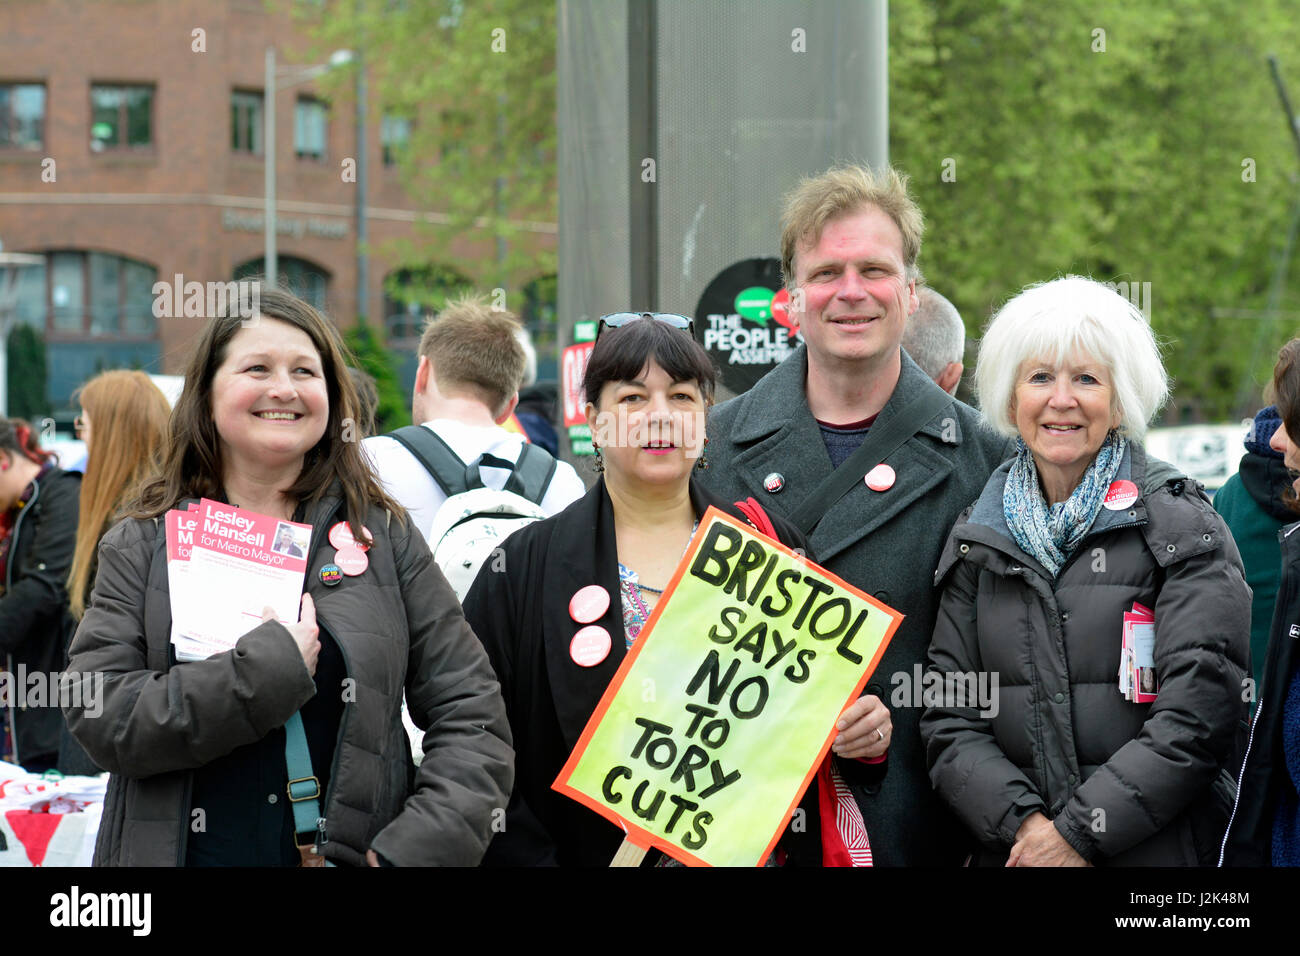 Bristol, UK. 29. April 2017. 1. große Demo von linken Aktivisten durchhalten Tories in der Stadt Bristol in Großbritannien. Organisiert von der Versammlung der Völker. Bildnachweis: Robert Timoney/Alamy Live-Nachrichten Stockfoto